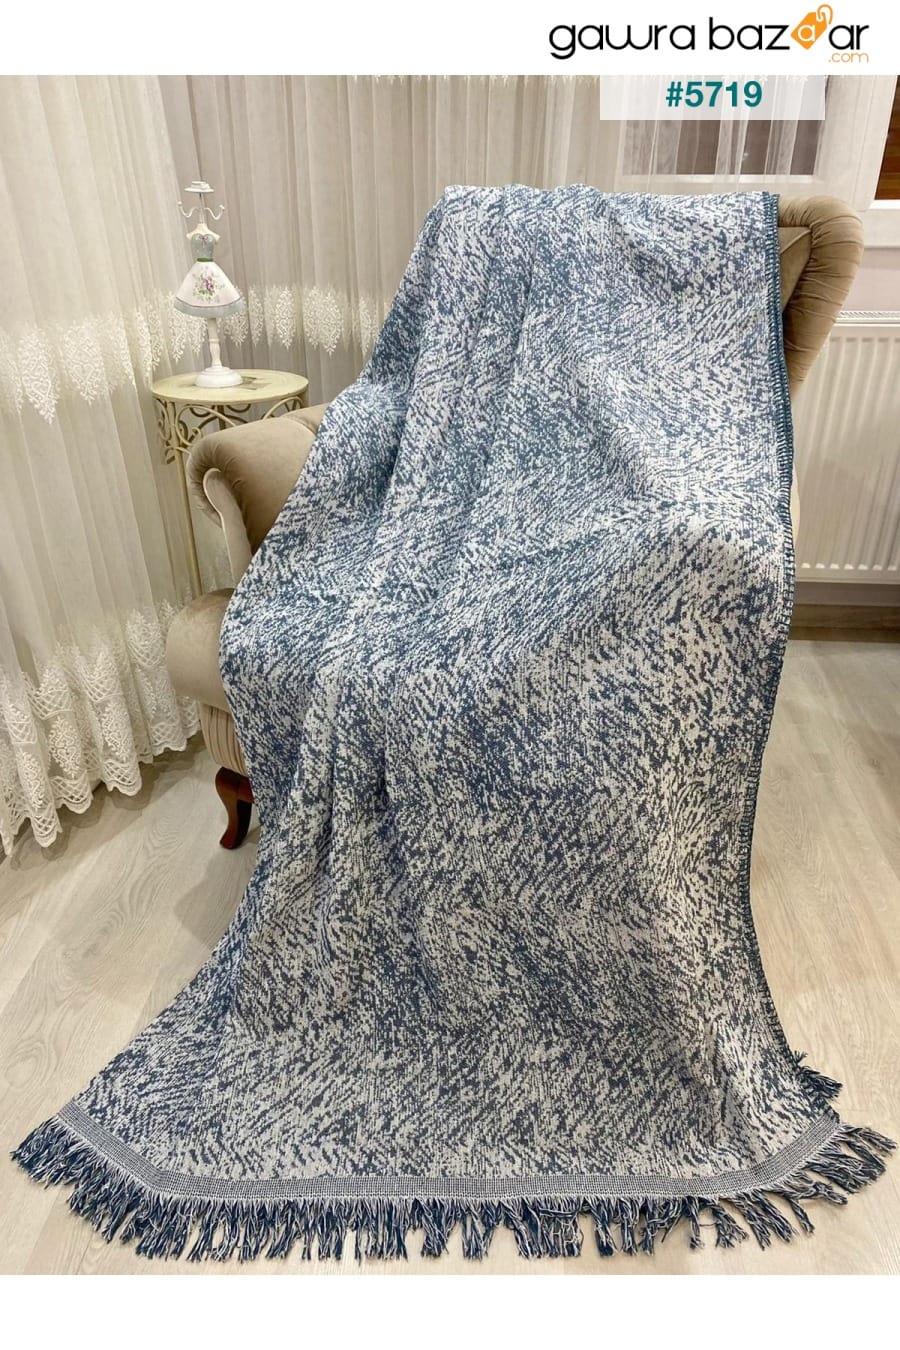 غطاء أريكة صوفا قطني فاخر أزرق دينم 170x220 وجهان مضادان للعرق مانع للانزلاق Özlü Home 0